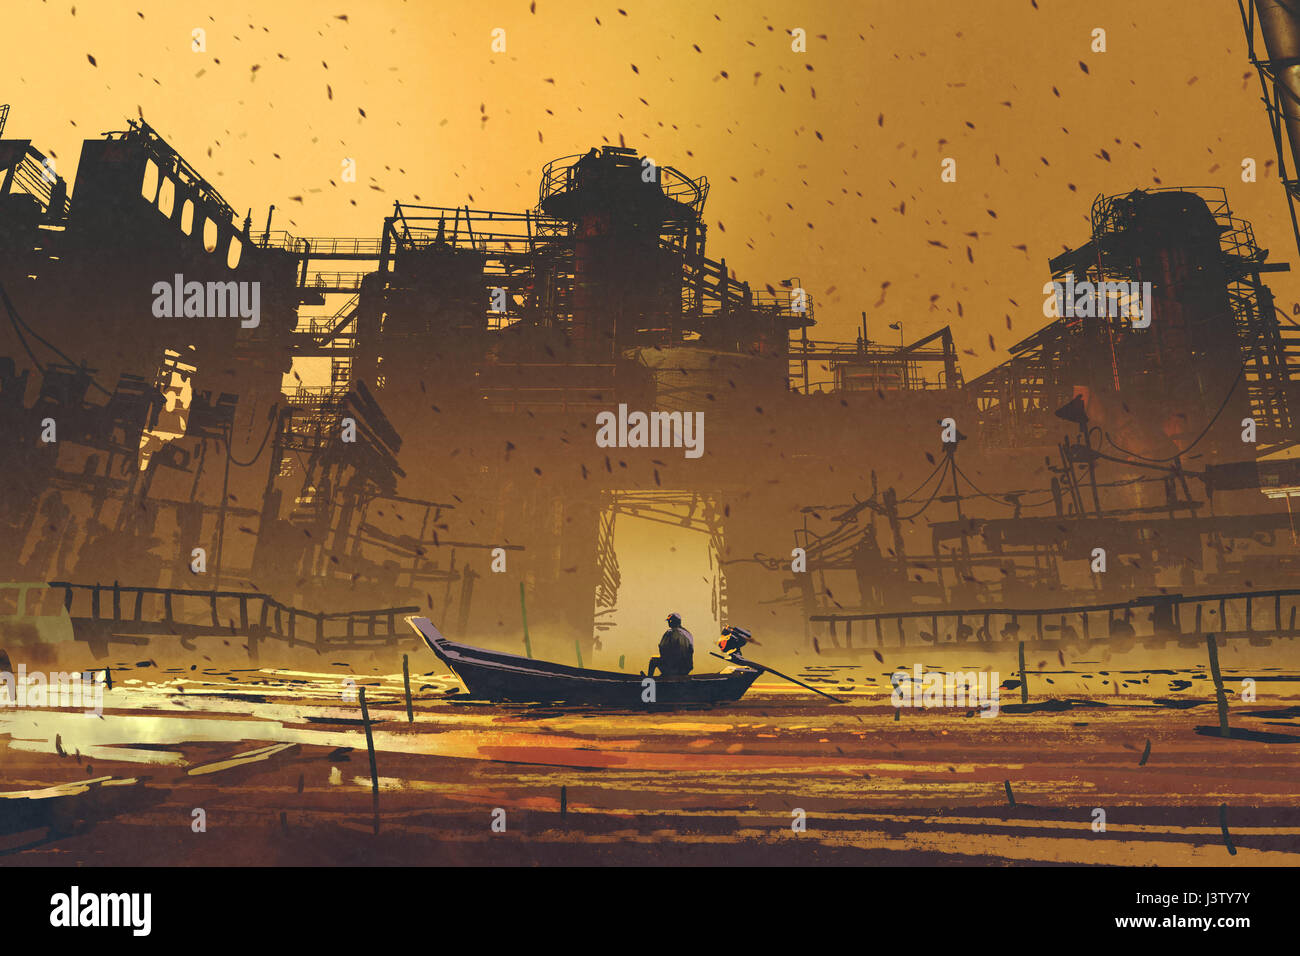 L'homme sur un bateau flottant sur la mer contre des bâtiments abandonnés avec style d'art numérique, illustration peinture Banque D'Images